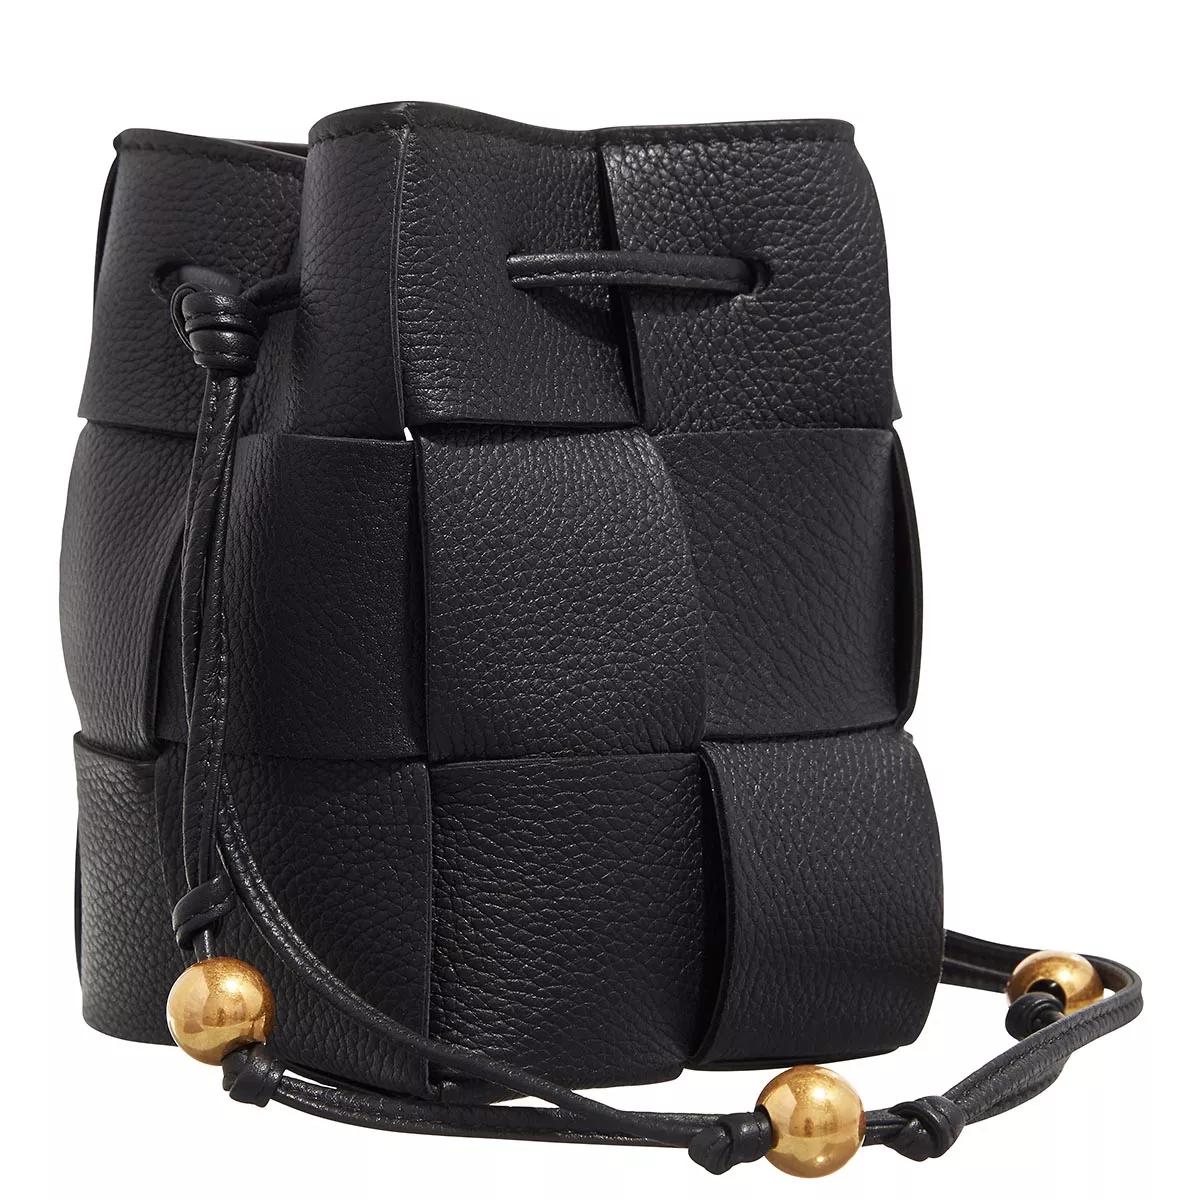 Bottega Veneta Crossbody bags Mini Cassette Bag in zwart